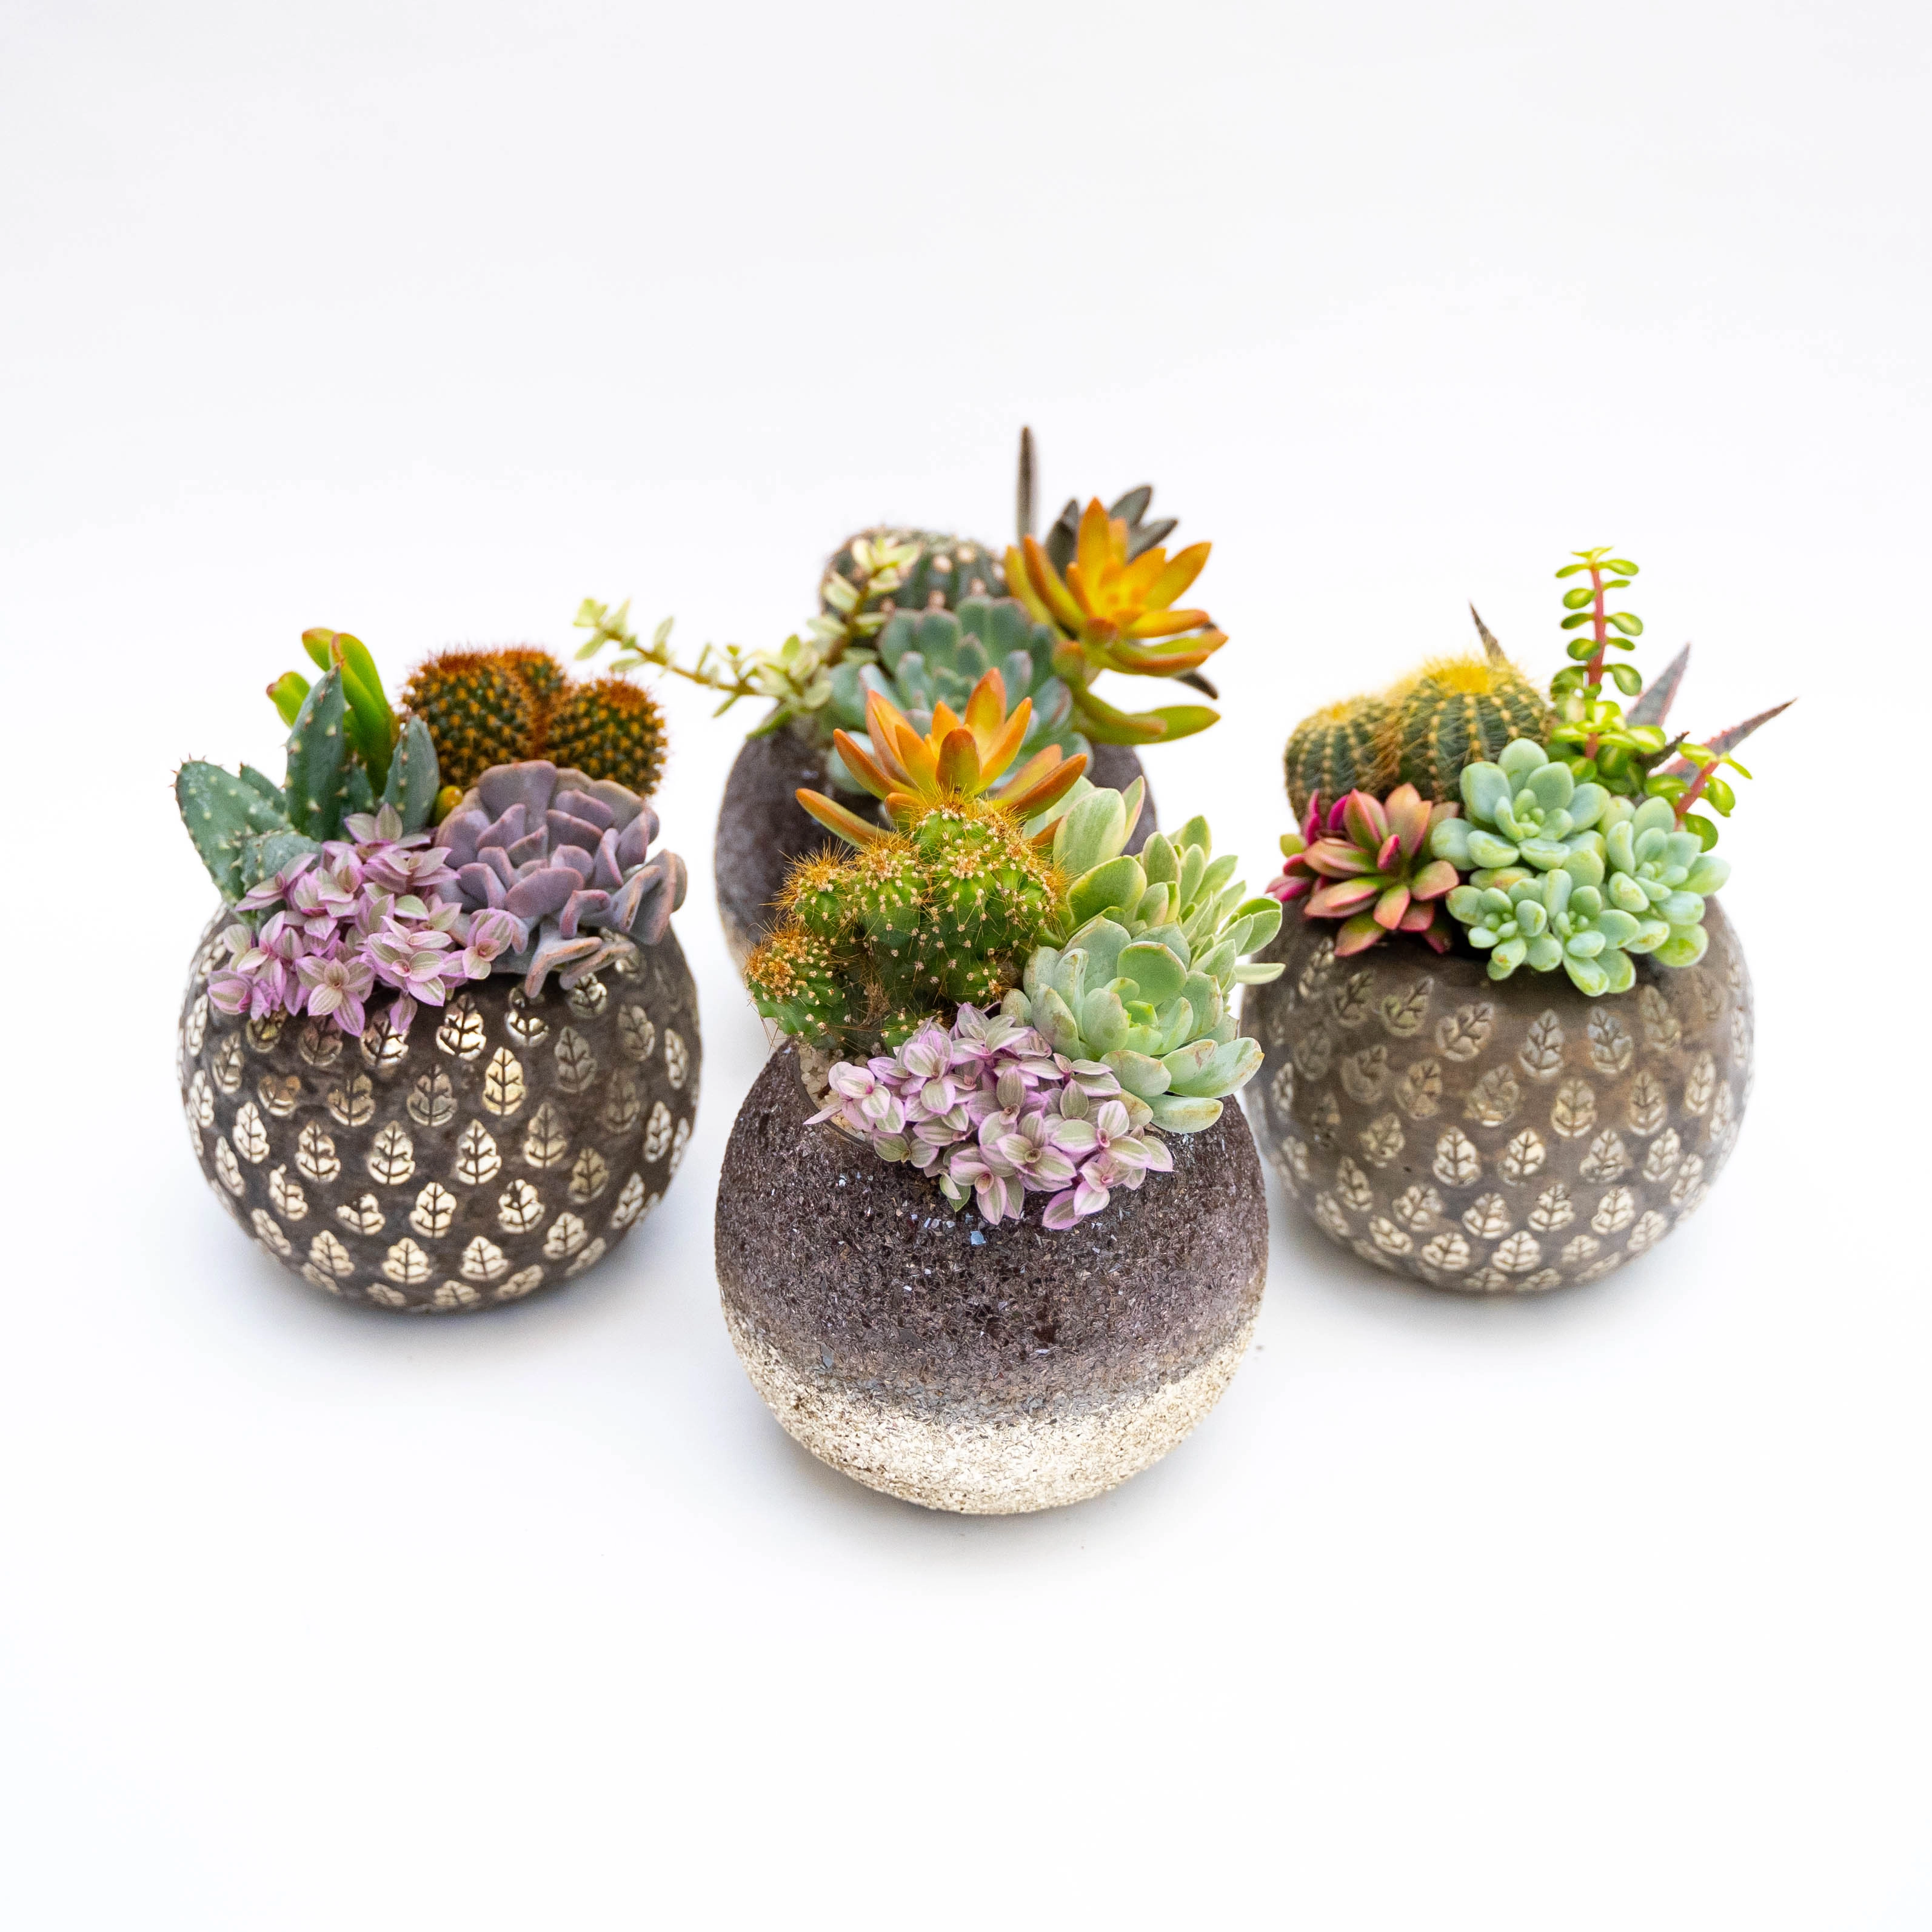 Composizione piccola di piante grasse in vaso di vetro decorato